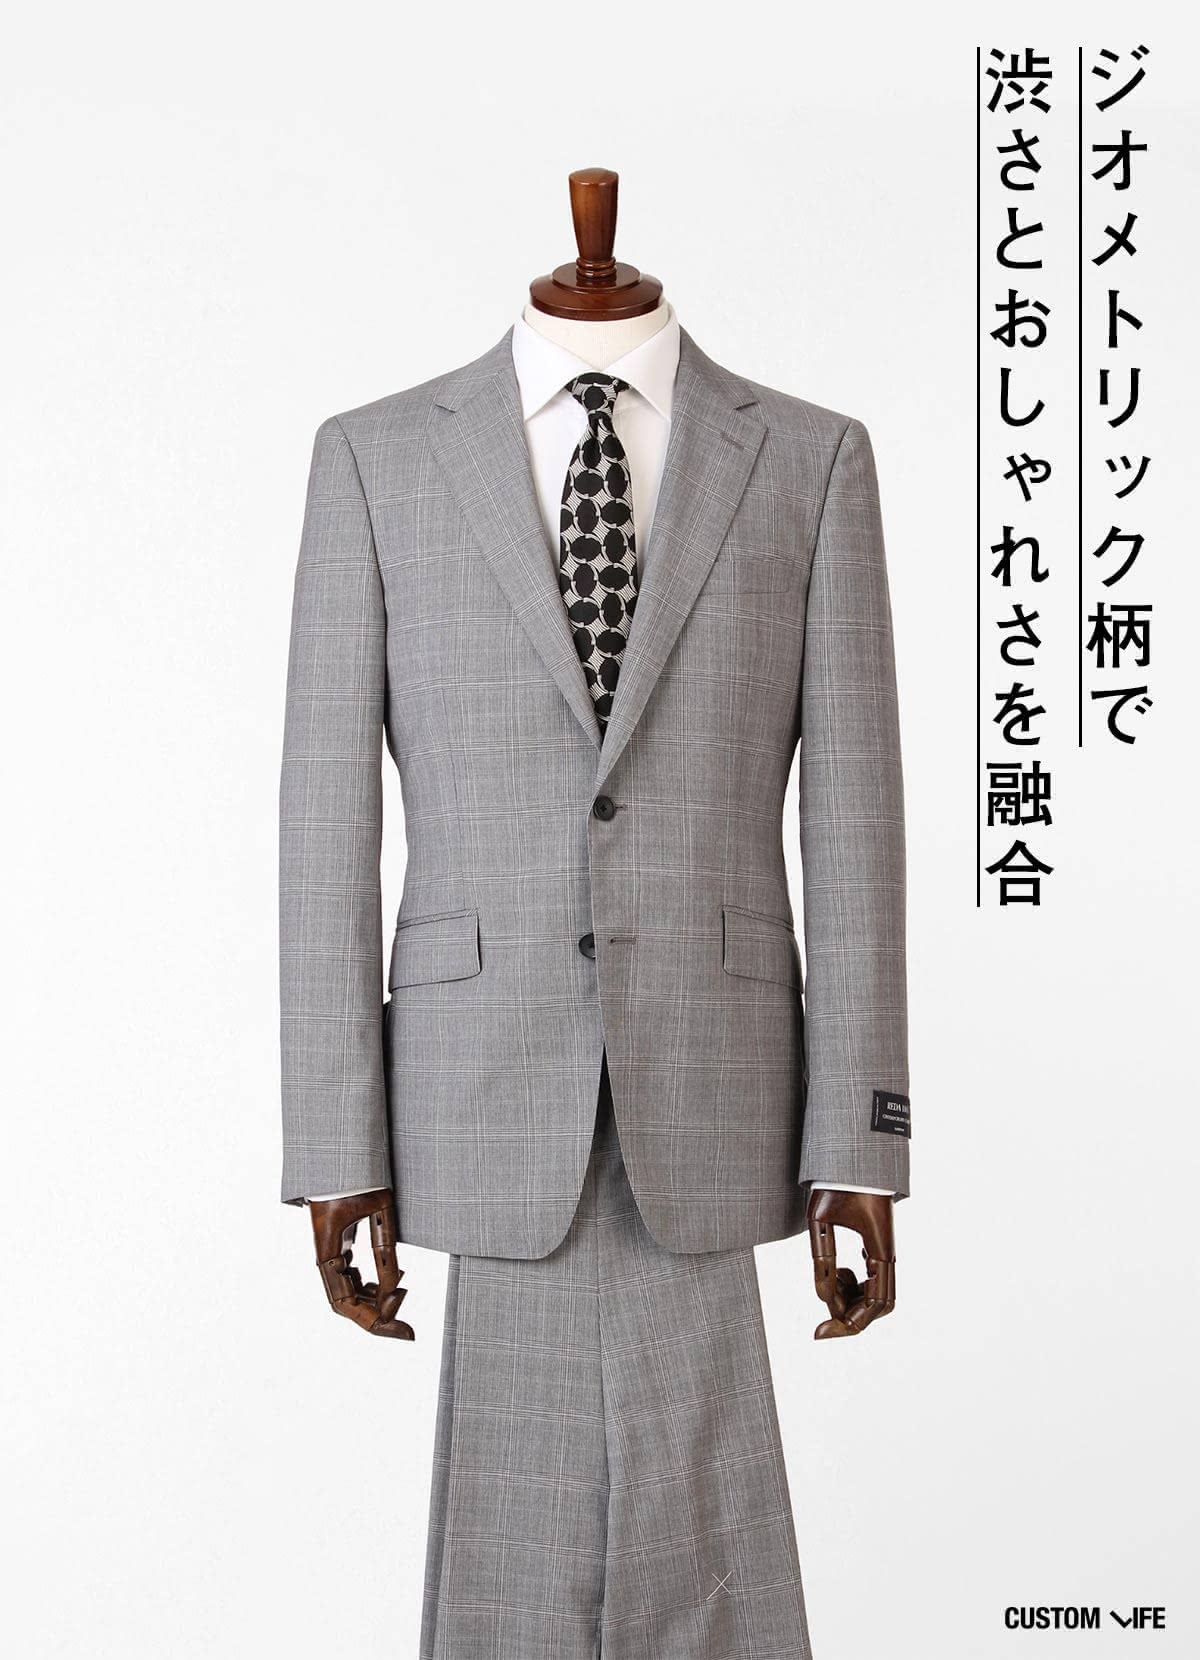 スーツの着こなしはかっこよく コーデからおすすめブランドを徹底解説 Customlife カスタムライフ